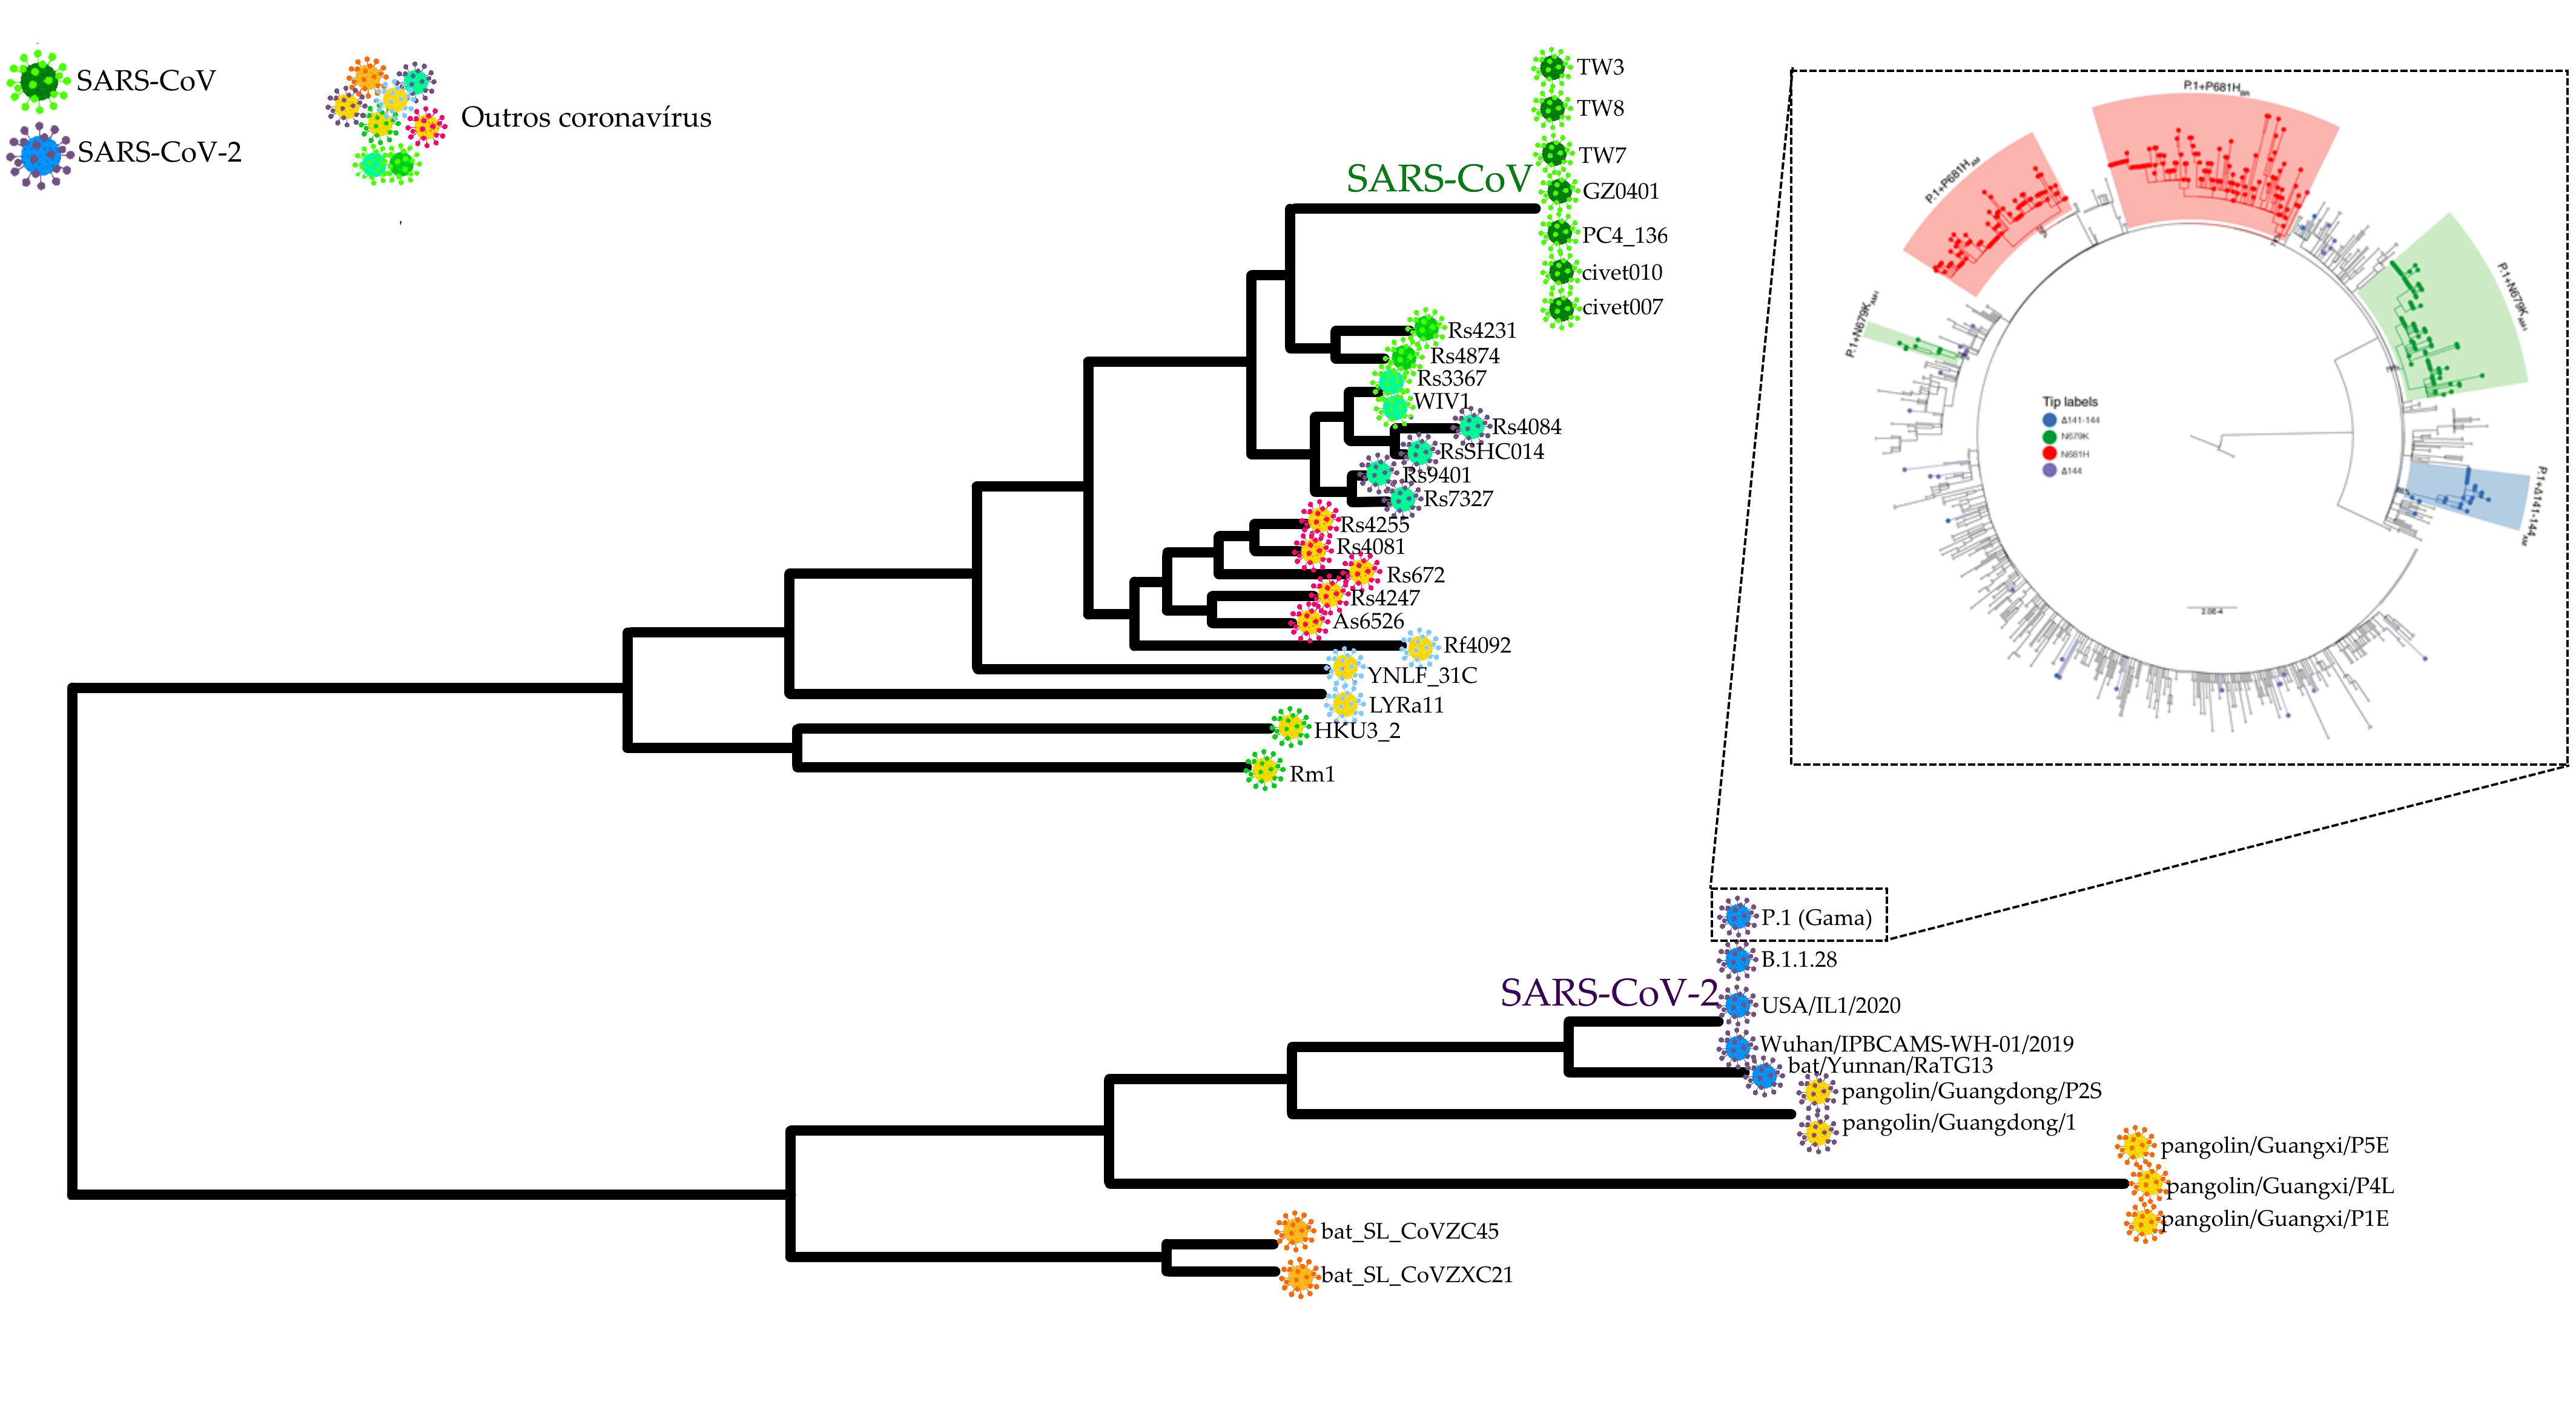 Gráfico que representa a árvore filogenética dos coronavírus de relevância epidemiológica dos anos mais recentes, demonstrando a evolução e o parentesco dos vírus com o SARS-CoV-2. O gráfico utiliza linhas que se ramificam para representar o parentesco entre diferentes espécies e/ou linhagens associa duas diferentes variáveis representadas por ramificações. Na legenda, no canto superior esquerdo, um círculo verde representa o vírus SARS-CoV, um círculo azul o SARS-CoV-2 e outros círculos coloridos representam outras espécies de coronavírus. O gráfico possui duas grandes ramificações, mostrando que há uma separação em dois ramos, sendo que o ramo superior é o que contém o vírus SARS-CoV e os coronavírus evolutivamente mais próximos a este. O ramo tem mais divisões, gerando ramos menores, de forma que a distância entre dois vírus é uma representação visual de seu parentesco evolutivo. Neste ramo superior encontram-se os vírus Rm1, HKU3_2, LYRa11, YNLF_31C, Rf4092, As6526, Rs4247, Rs672, Rs4081, Rs4255, Rs7327, Rs9401, RsSHC014, Rs4084, WIV1, Rs3367, Rs4874 e Rs4231, não pertencentes à espécie SARS-CoV, além das linhagens SARS-CoV: TW3, TW8, TW7, GZ0401, PC4_136, civet010 e civet007. O grande ramo inferior do gráfico contém os vírus bat_SL_CoVZC45, bat_SL_CoVZXC21, pangolin/Guangxi/P5E, pangolin/Guangxi/P4L, pangolin/Guangxi/P1E, pangolin/Guangdong/P2S e pangolin/Guangdong/1, não pertencentes à espécie SARS-CoV-2, além das linhagens SARS-CoV-2: P.1 (Gama), B.1.1.28, USA/IL1/2020, Wuhan/IPBCAMS-WH-01/2019 e bat/Yunnan/RaTG13. No canto superior direito do gráfico, há uma segunda árvore filogenética, em formato circular, detalhando sublinhagens da Variante P.1 (Gama) e suas relações de parentesco.